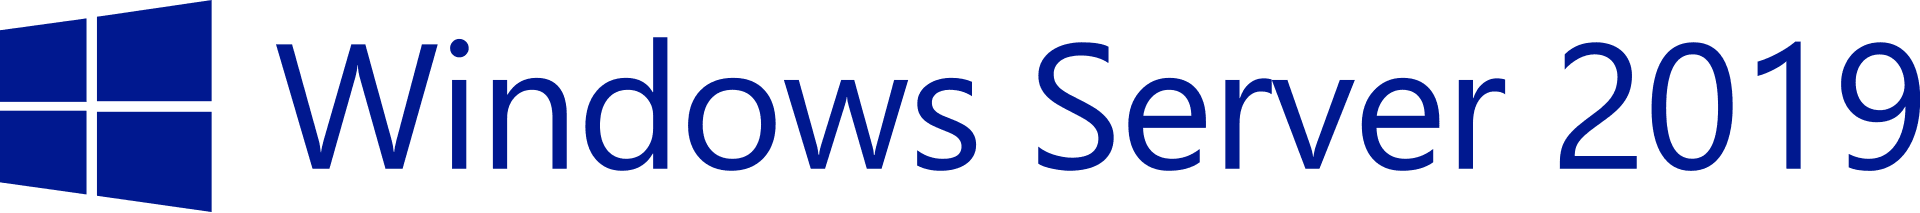 Windows server 2019 logo